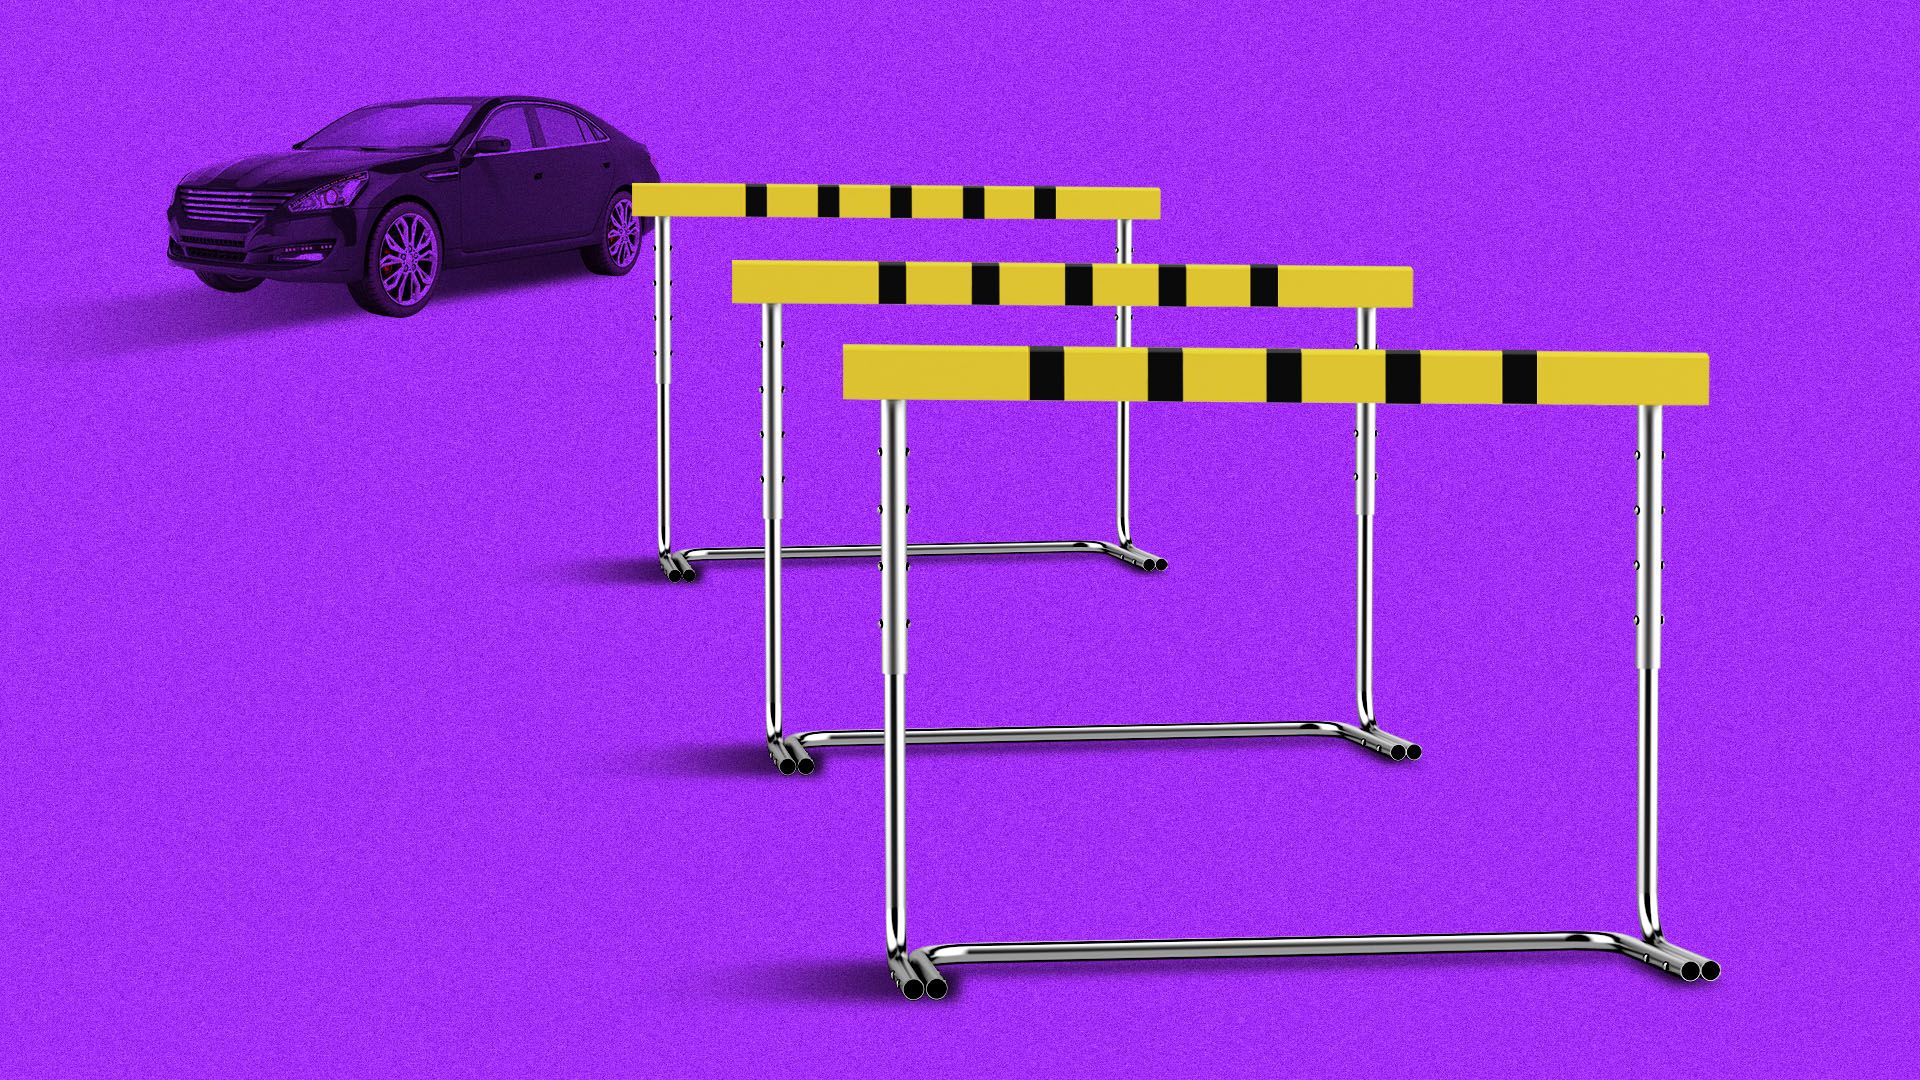 Illustration of car facing three hurdles